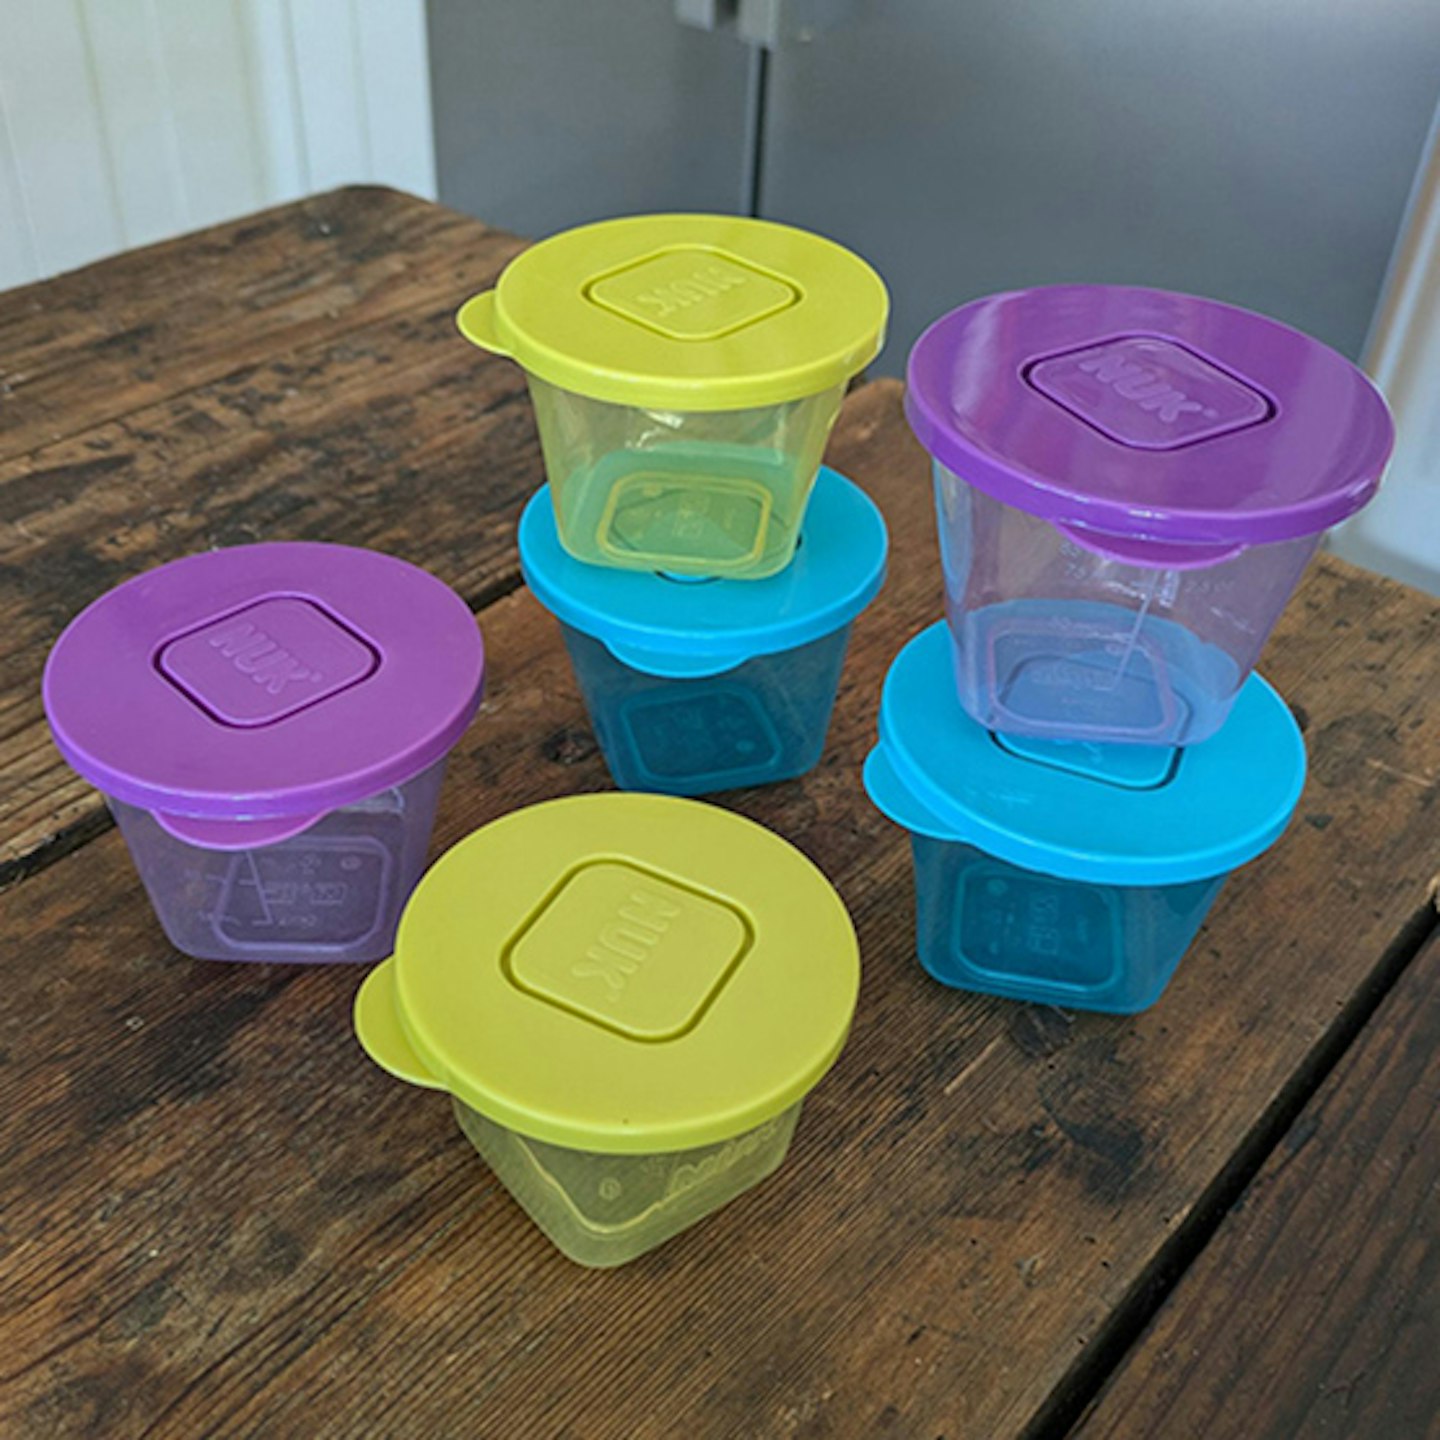 NUK stackable storage jars